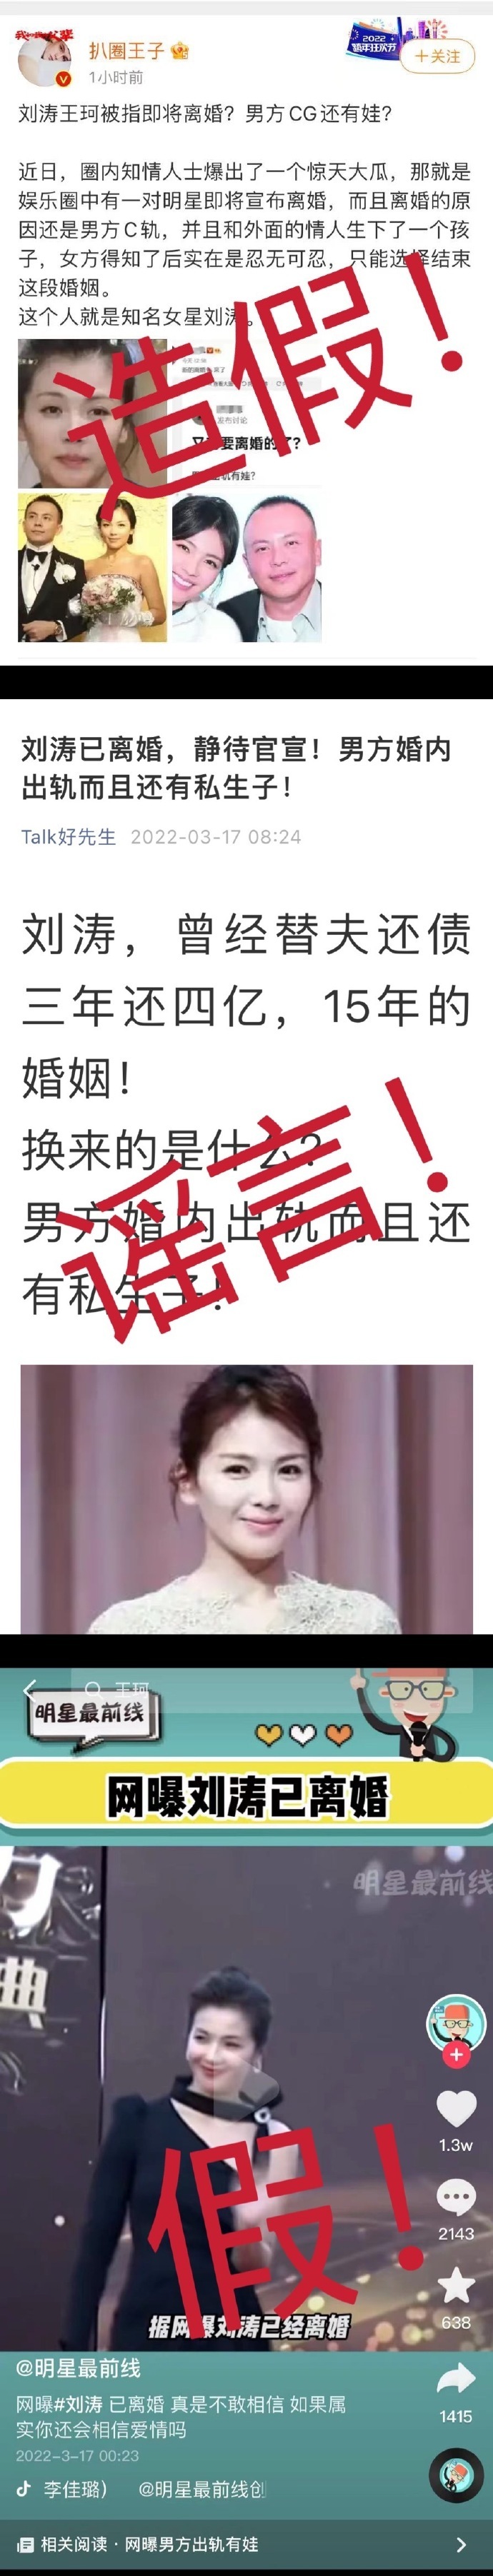 工作室发声明辟谣刘涛王珂离婚 已委托律师全权处理不实消息